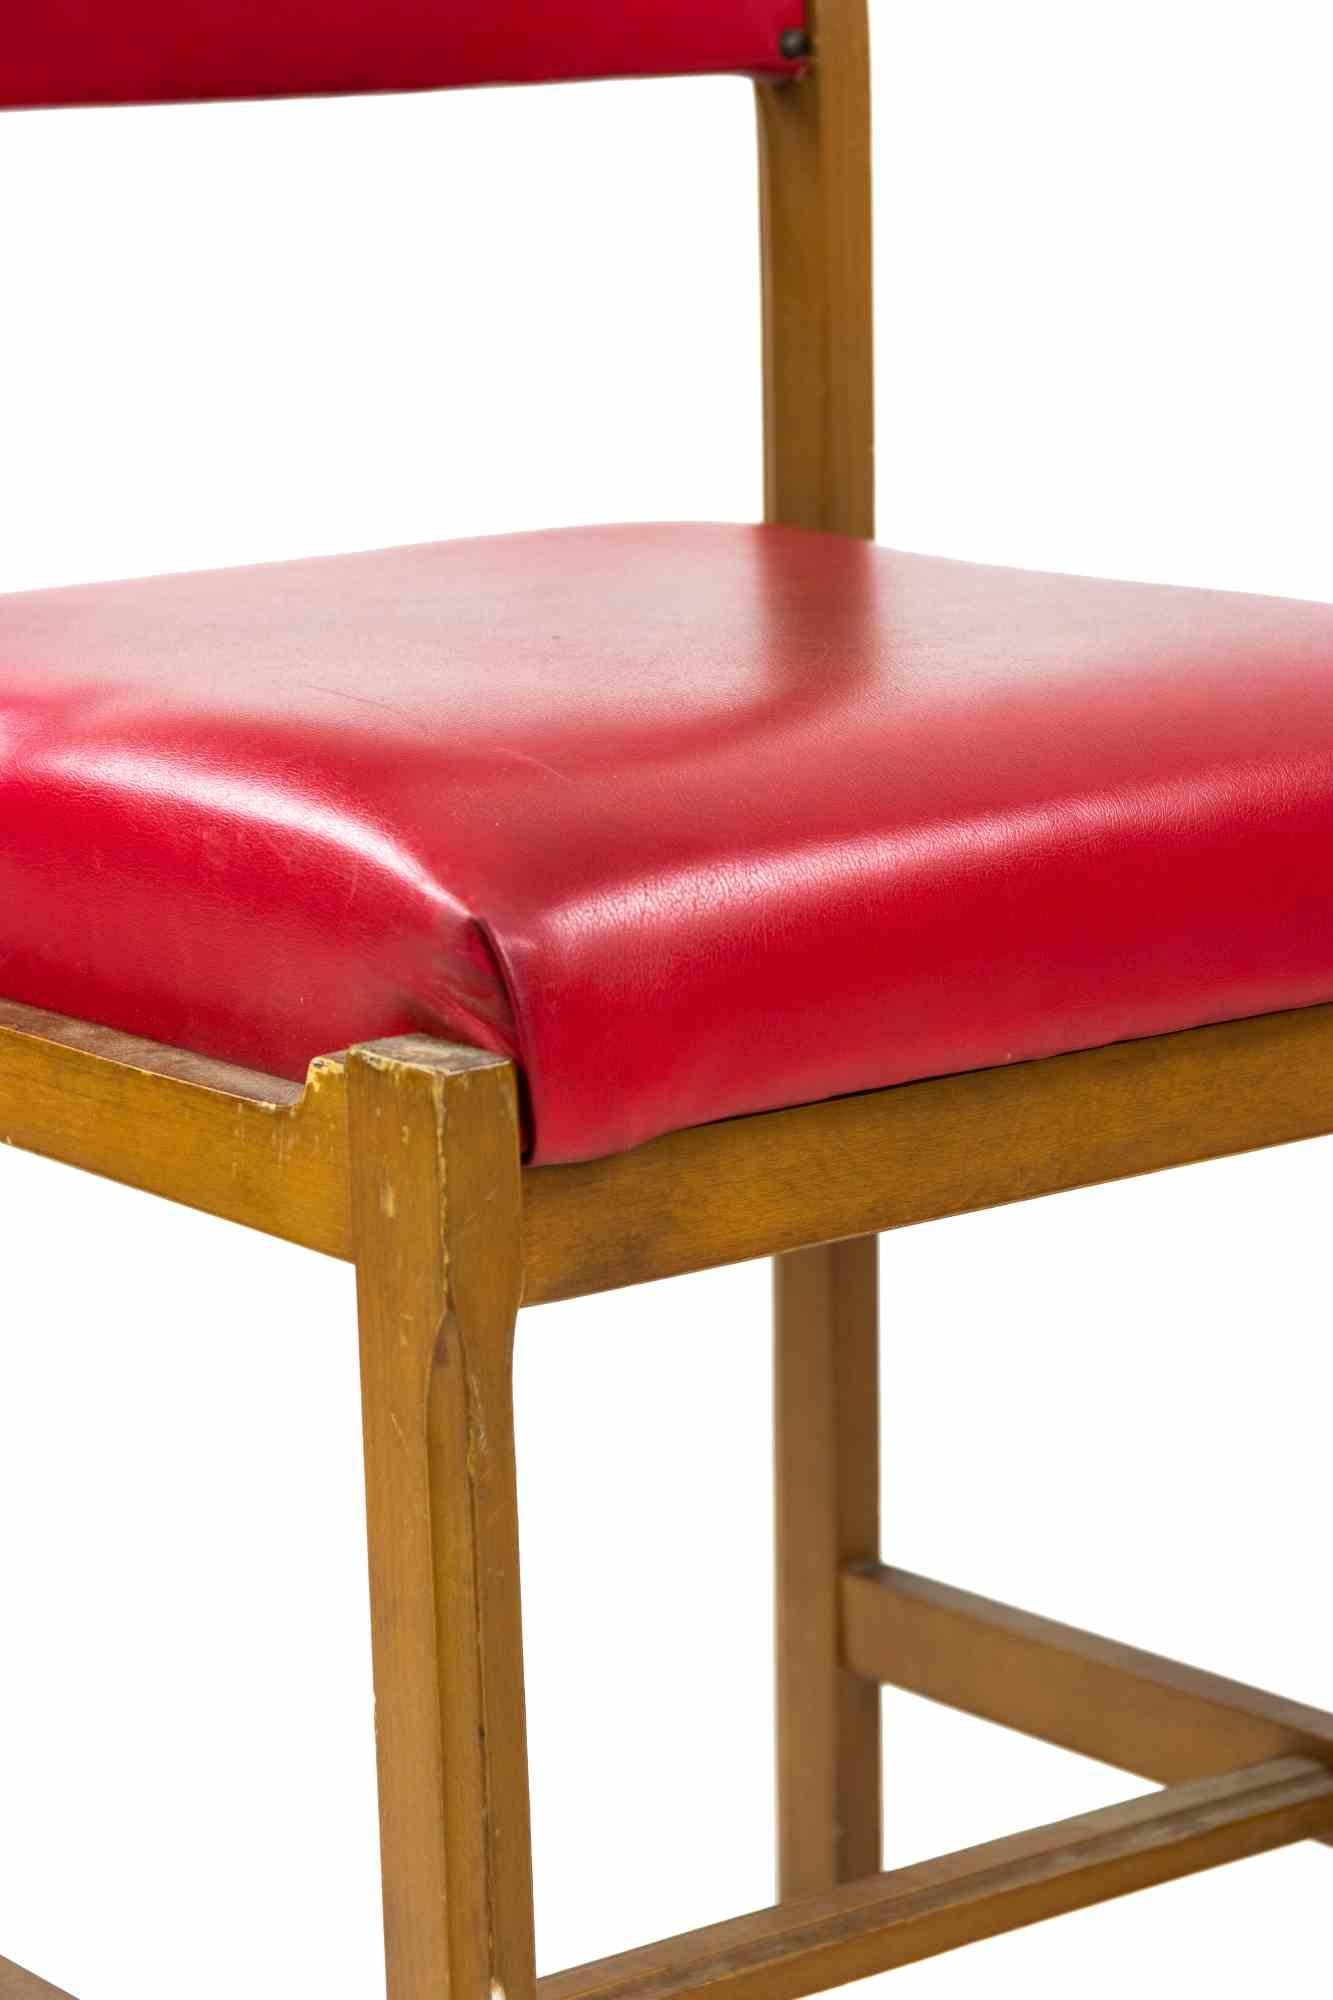 Set von roten Stühlen ist ein Original-Design-Möbel Sitzmöbel realisiert von Anonymous italienischen Künstler in den 1970 und zugeschrieben MIM.

Ein Satz von sechs Stühlen mit rotem Leder und Holzbezug.

Neuwertiger Zustand (einige Kratzer und